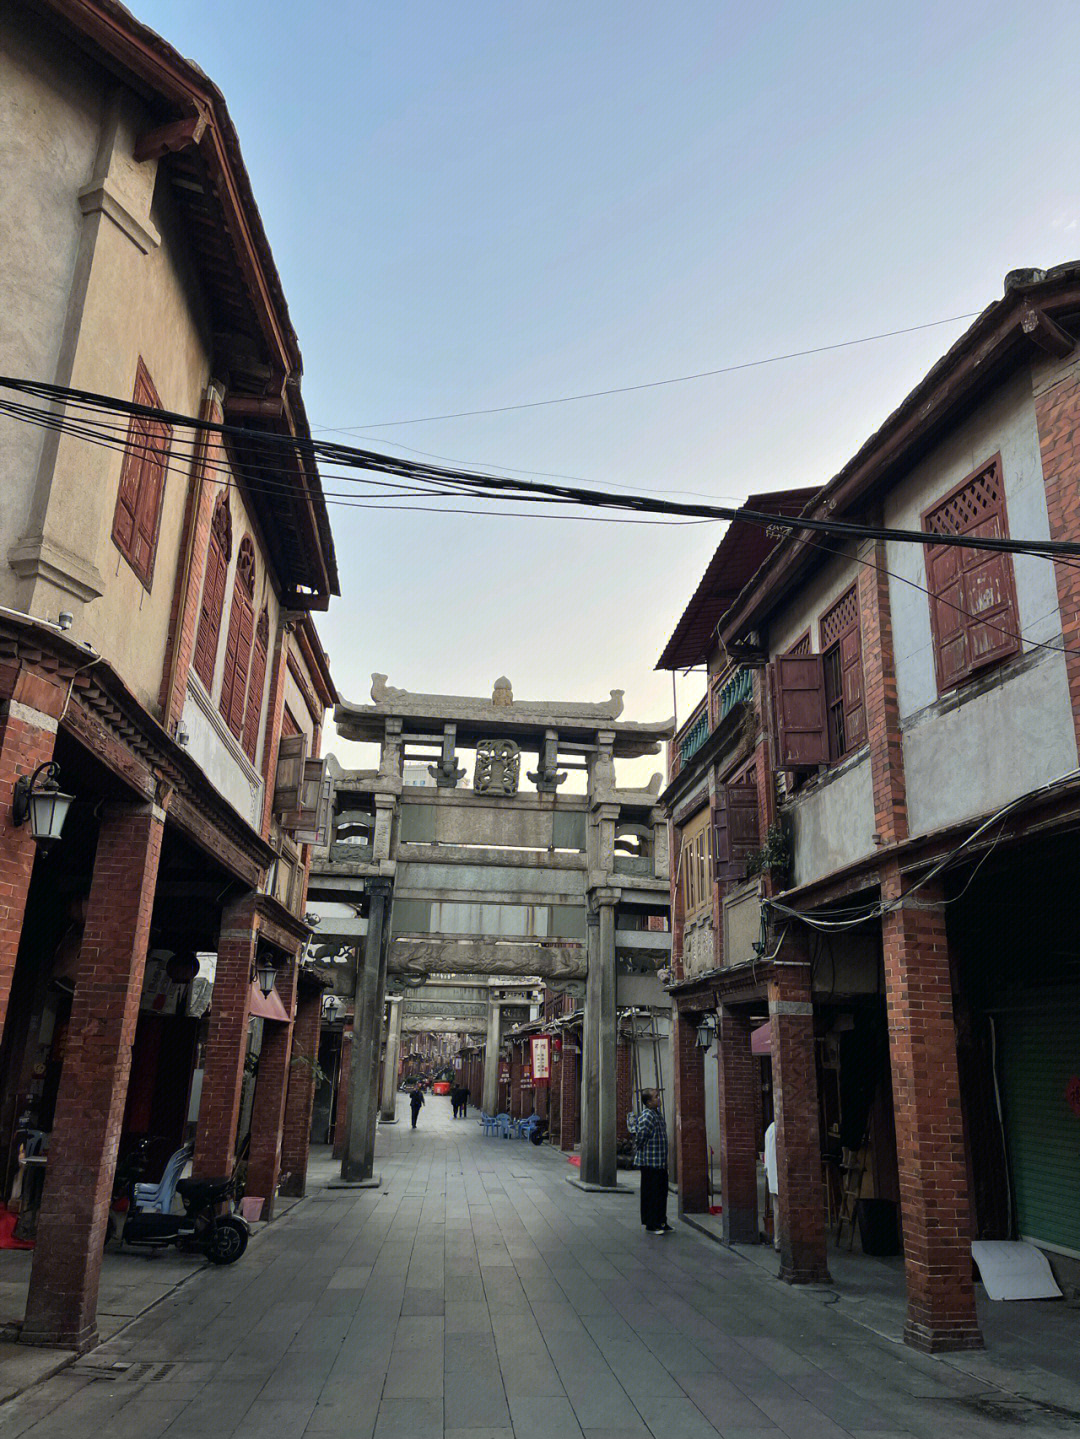 漳州古城老照片图片